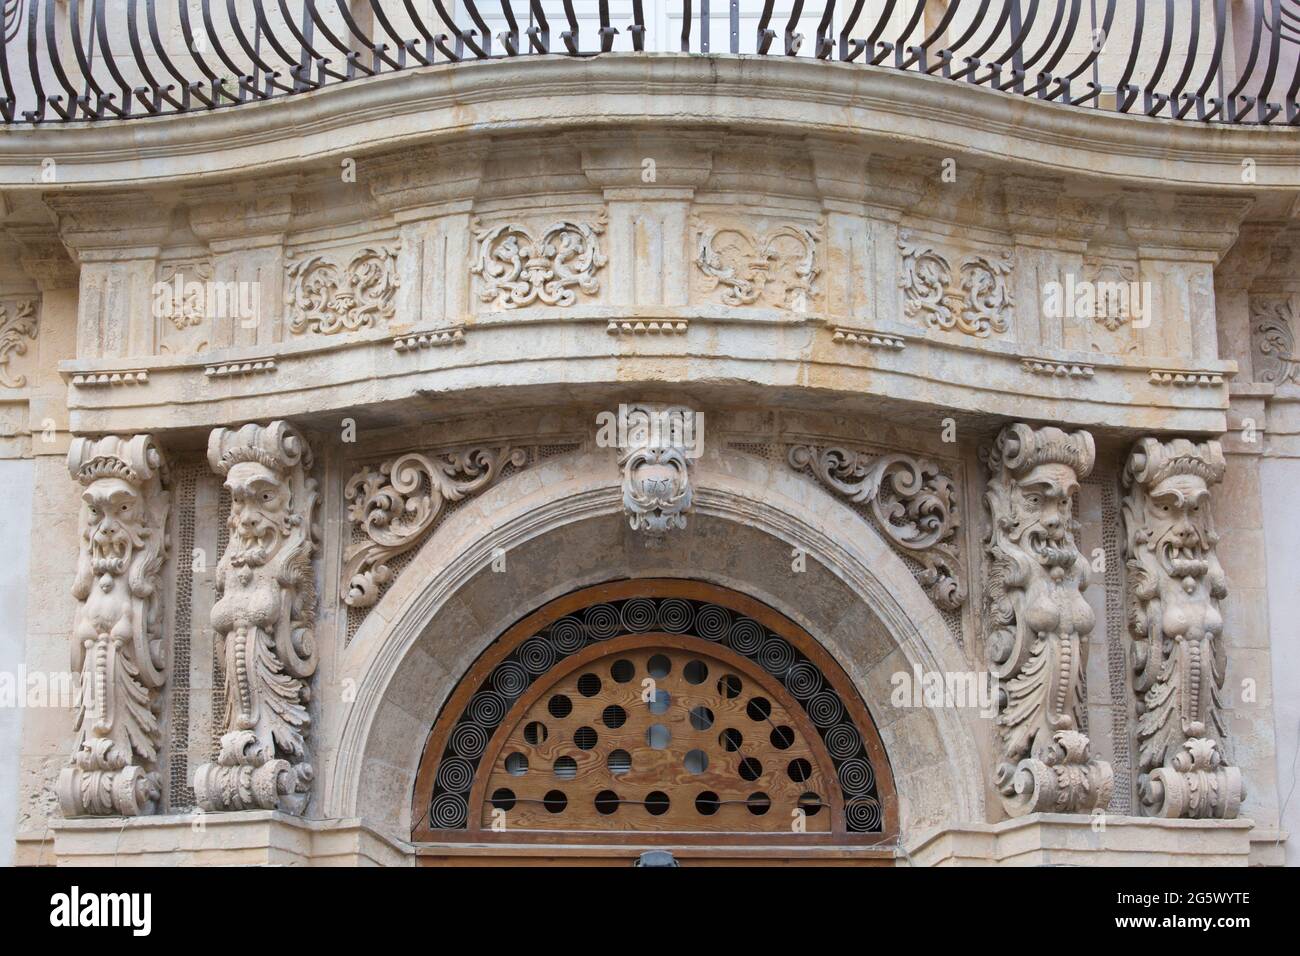 Noto, Syrakus, Sizilien, Italien. Groteske geschnitzte Figuren auf extravaganter ornamentaler façade eines historischen barocken palazzo im Corso Vittorio Emanuele. Stockfoto